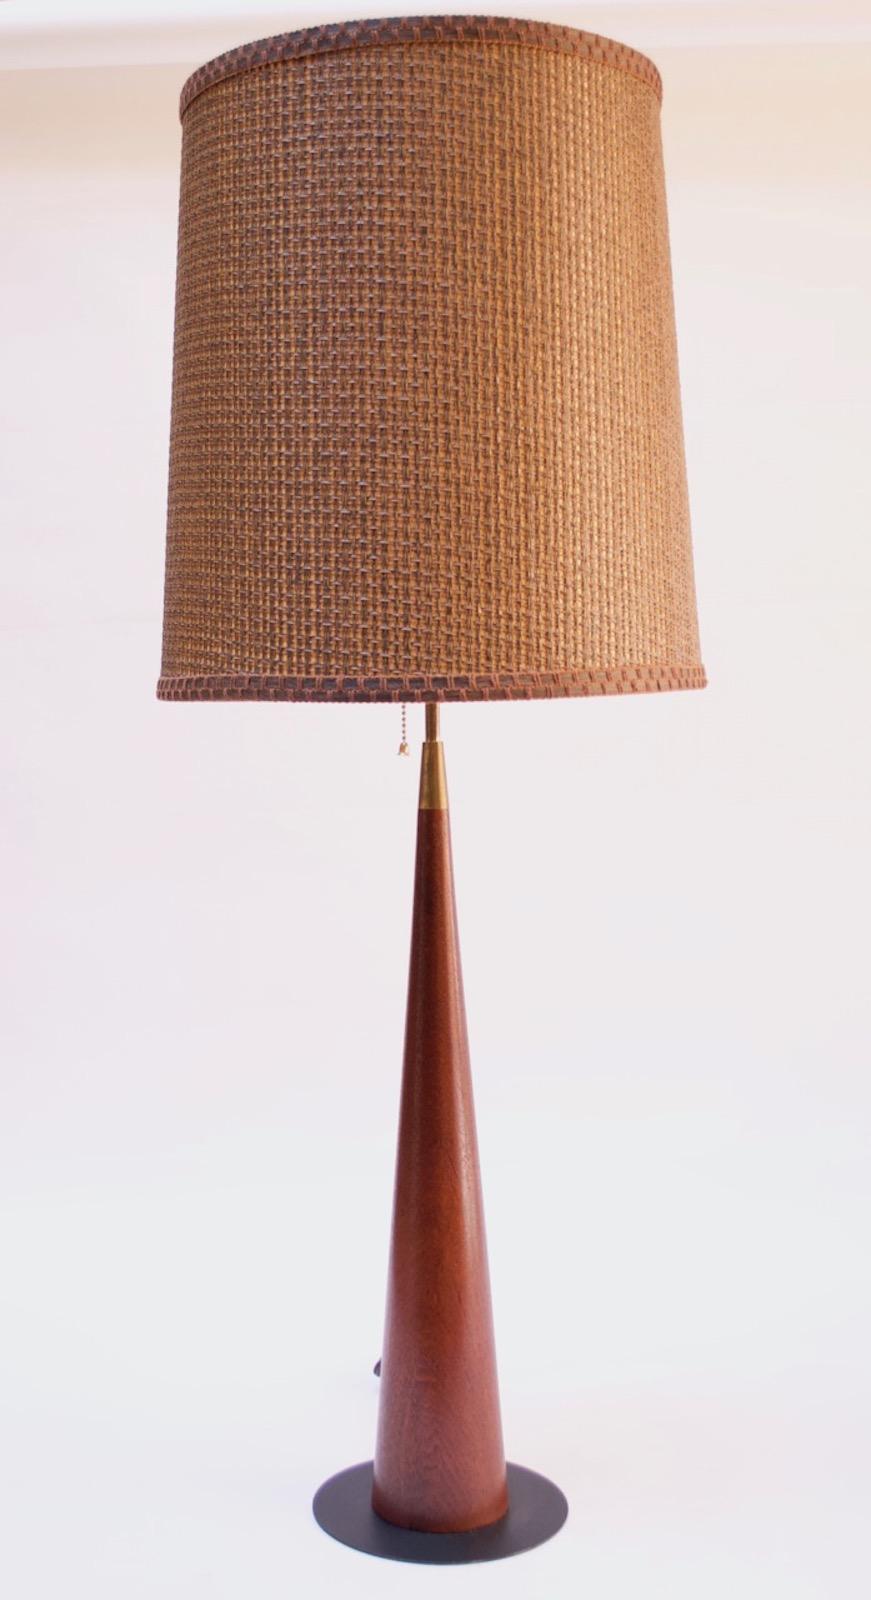 Cette lampe de table danoise des années 1960 est élégante dans sa simplicité. Elle est composée d'un cadre conique en teck relié par un col/tige en laiton au sommet et d'une base circulaire en métal noir. La forme modeste et les lignes épurées sont